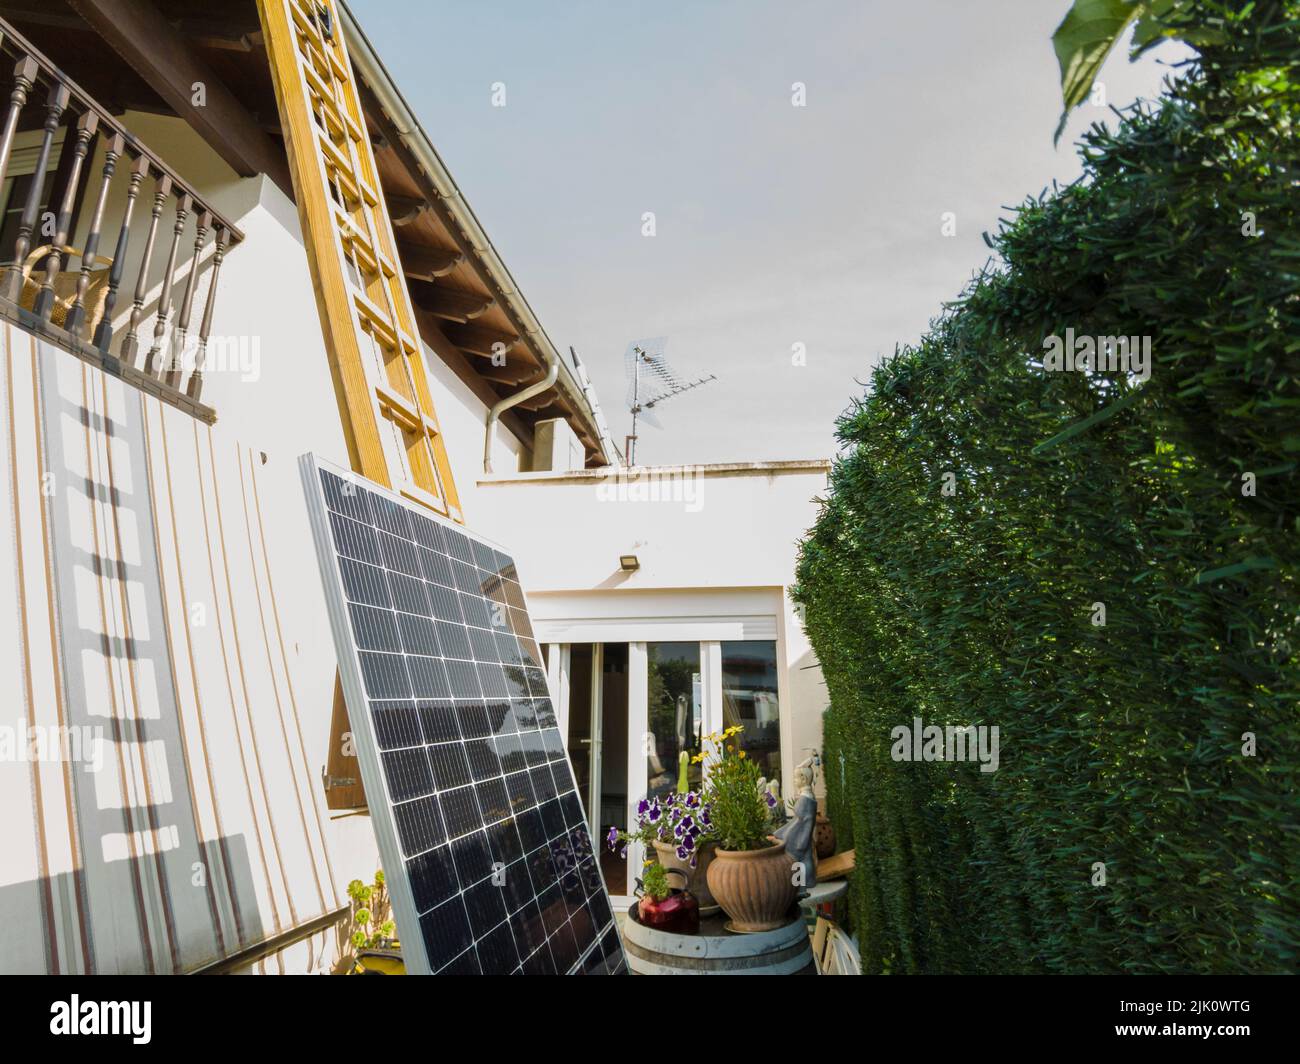 Panneau solaire en échelle. Navarre, Espagne, Europe. Concepts d'environnement et de technologie. Banque D'Images